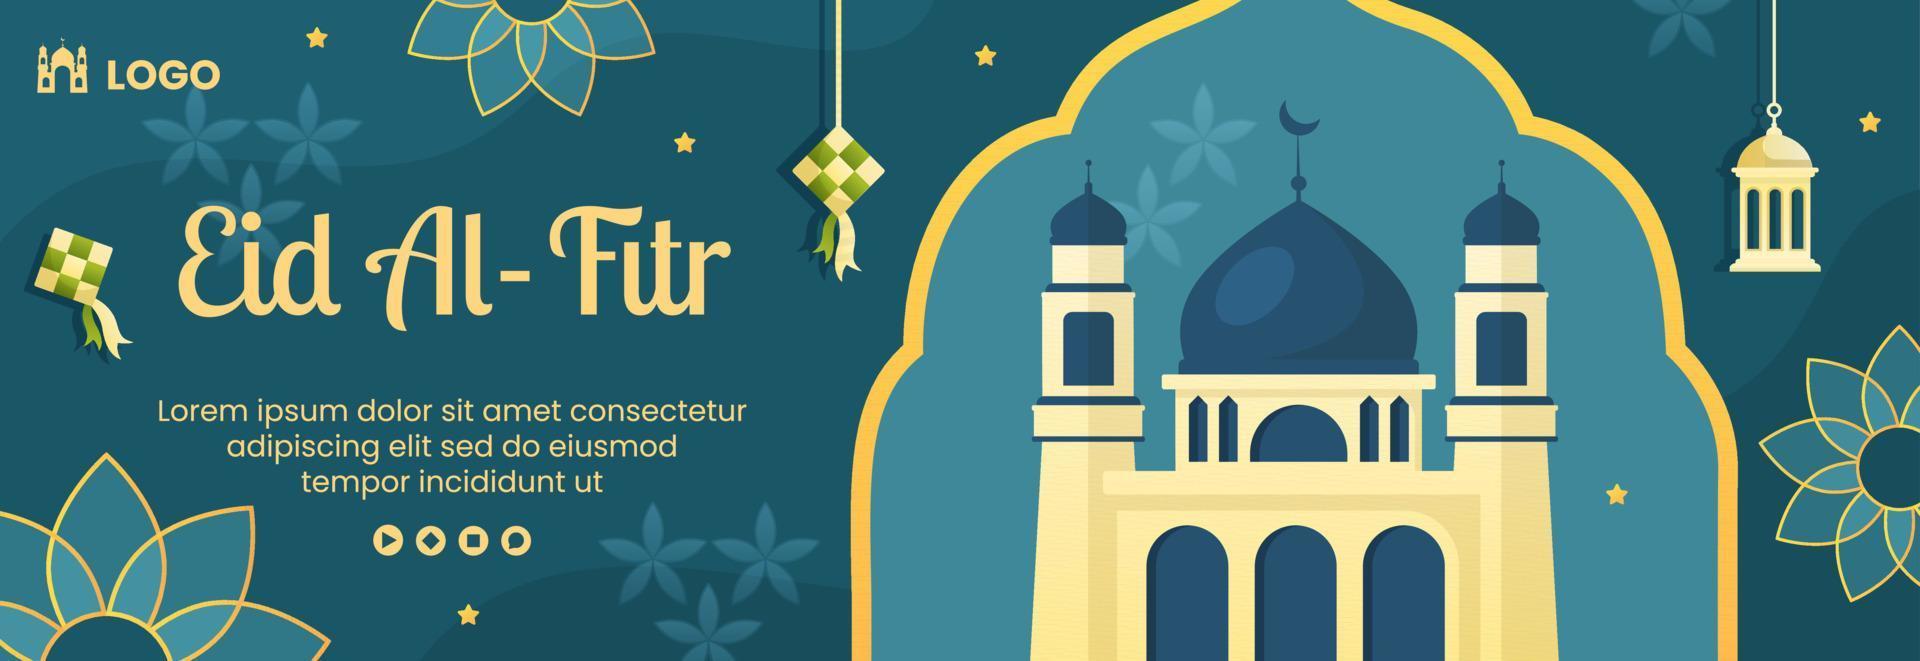 glad eid al-fitr mubarak header omslagsmall platt designillustration redigerbar av kvadratisk bakgrund för sociala medier, affisch eller gratulationskort vektor